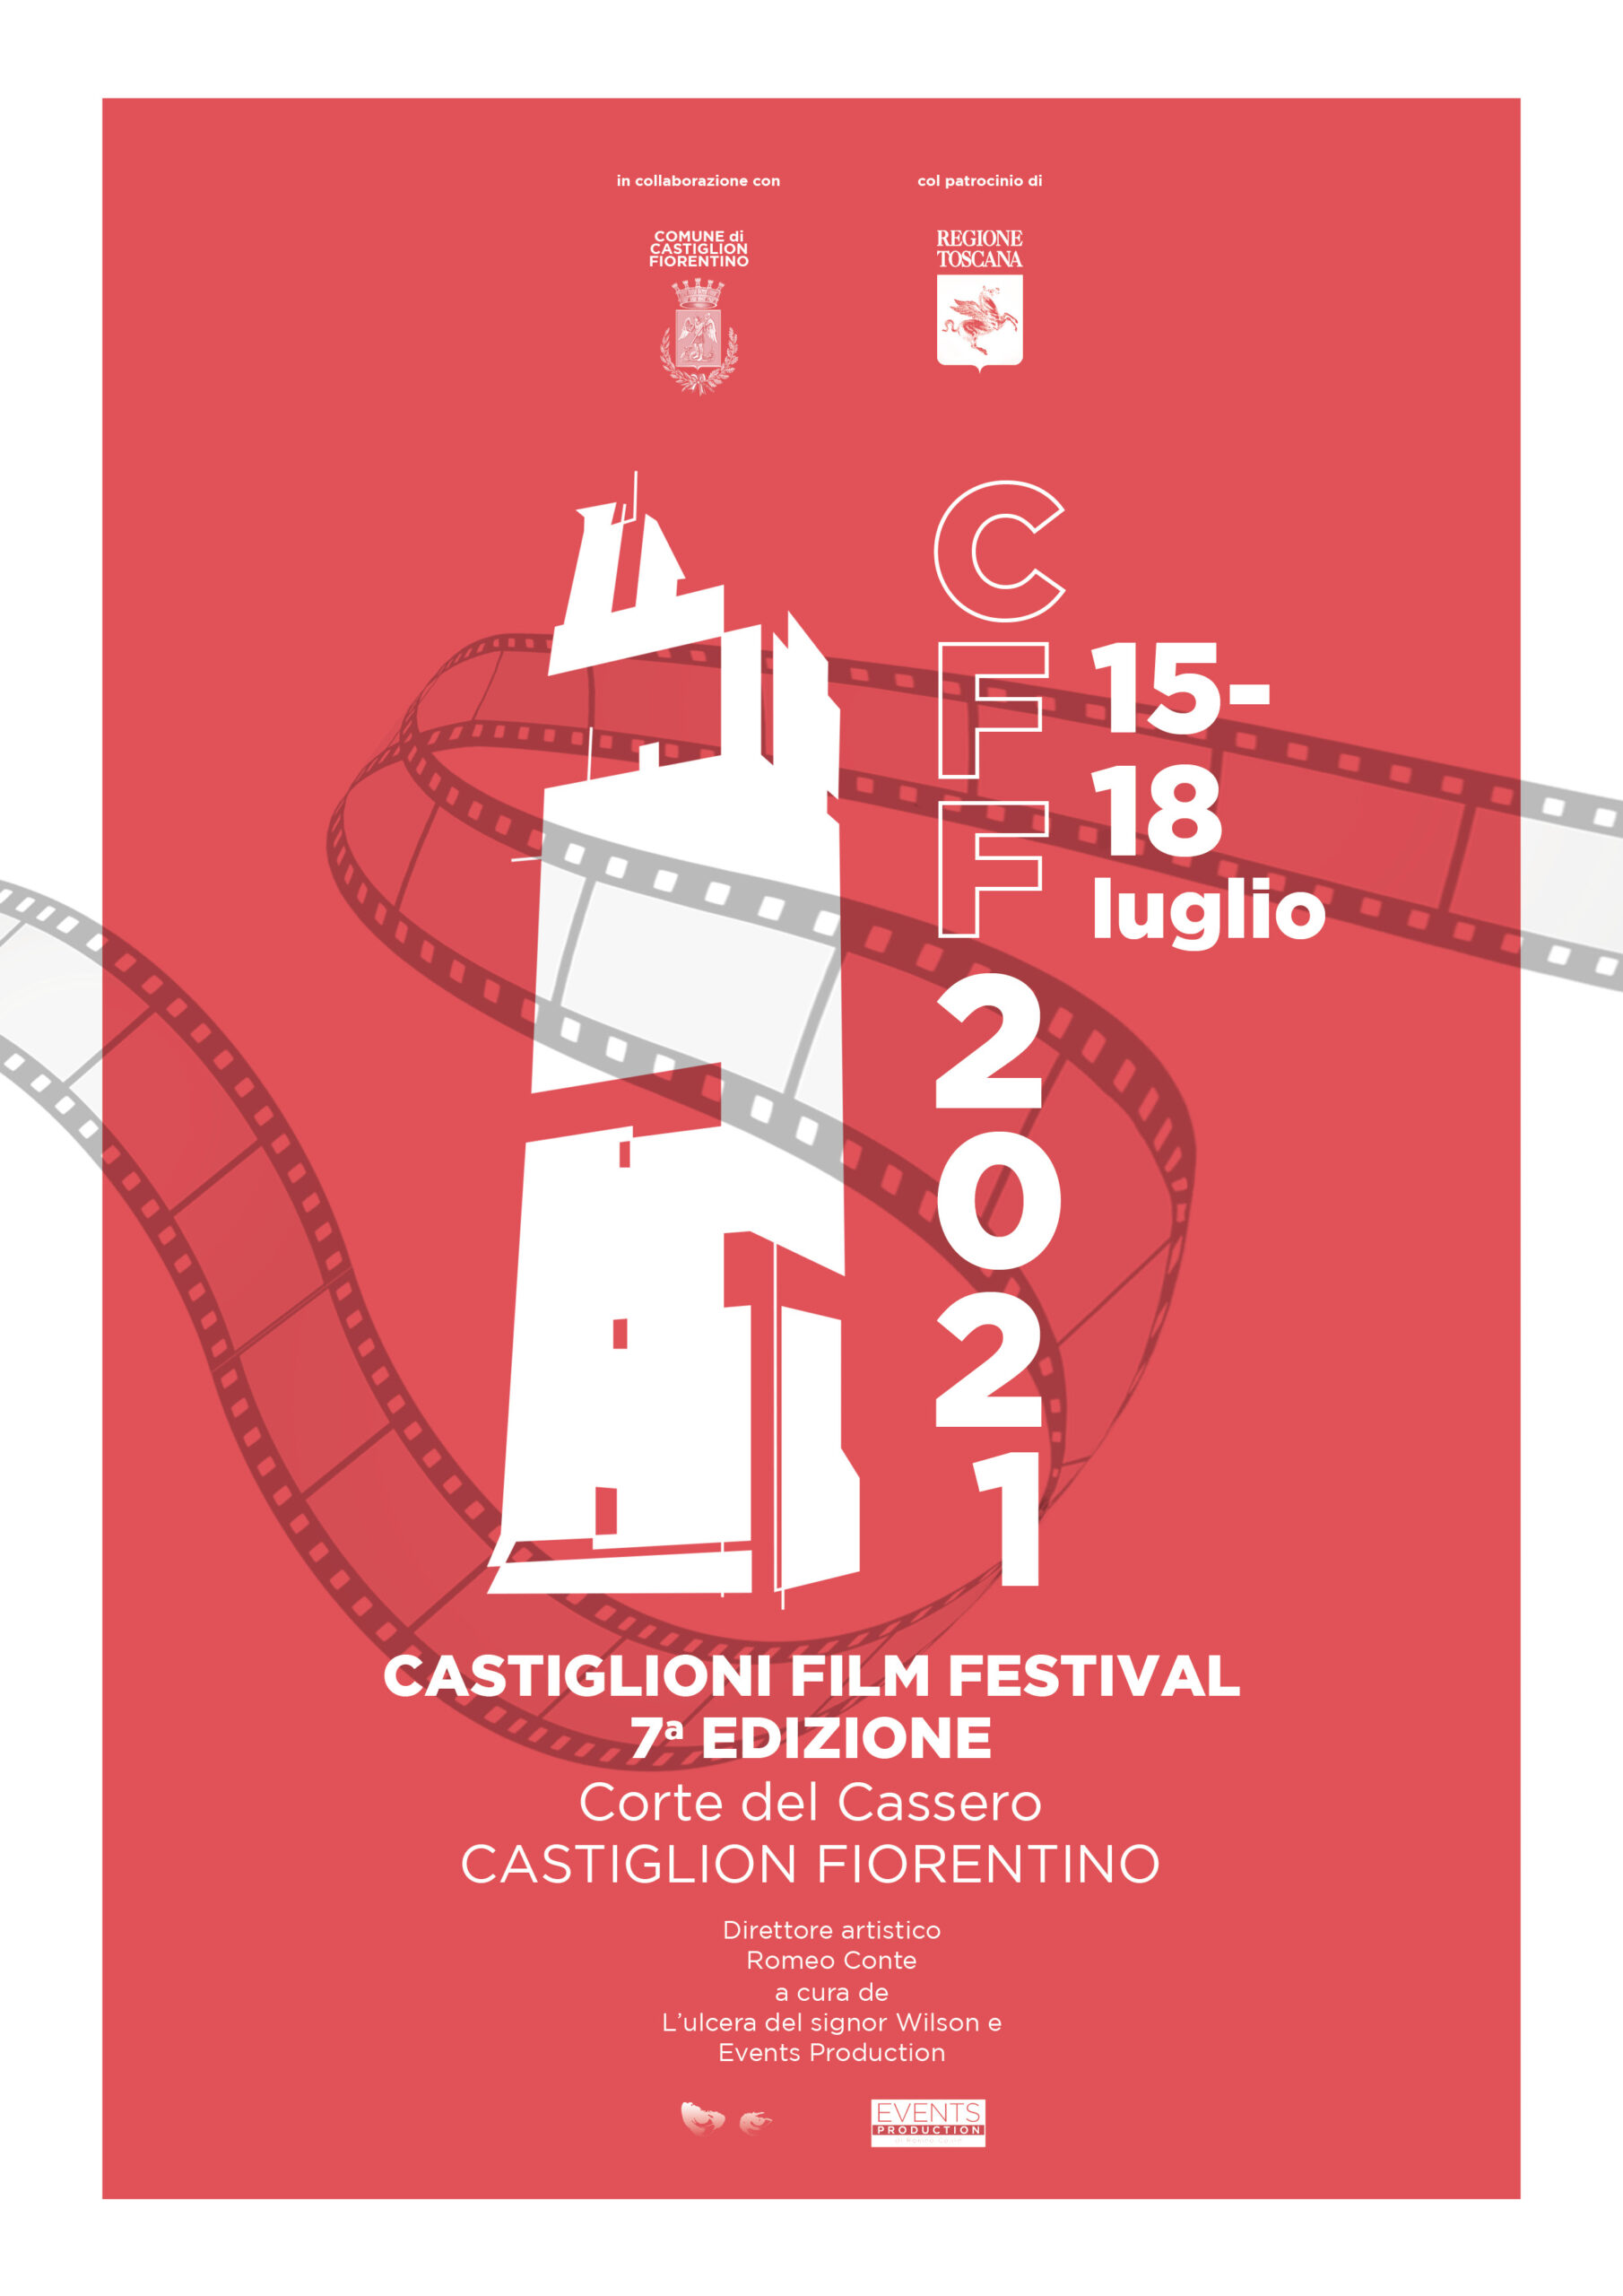 Castiglioni Film Festival: serata omaggio dedicata a Fantozzi con Neri Parenti